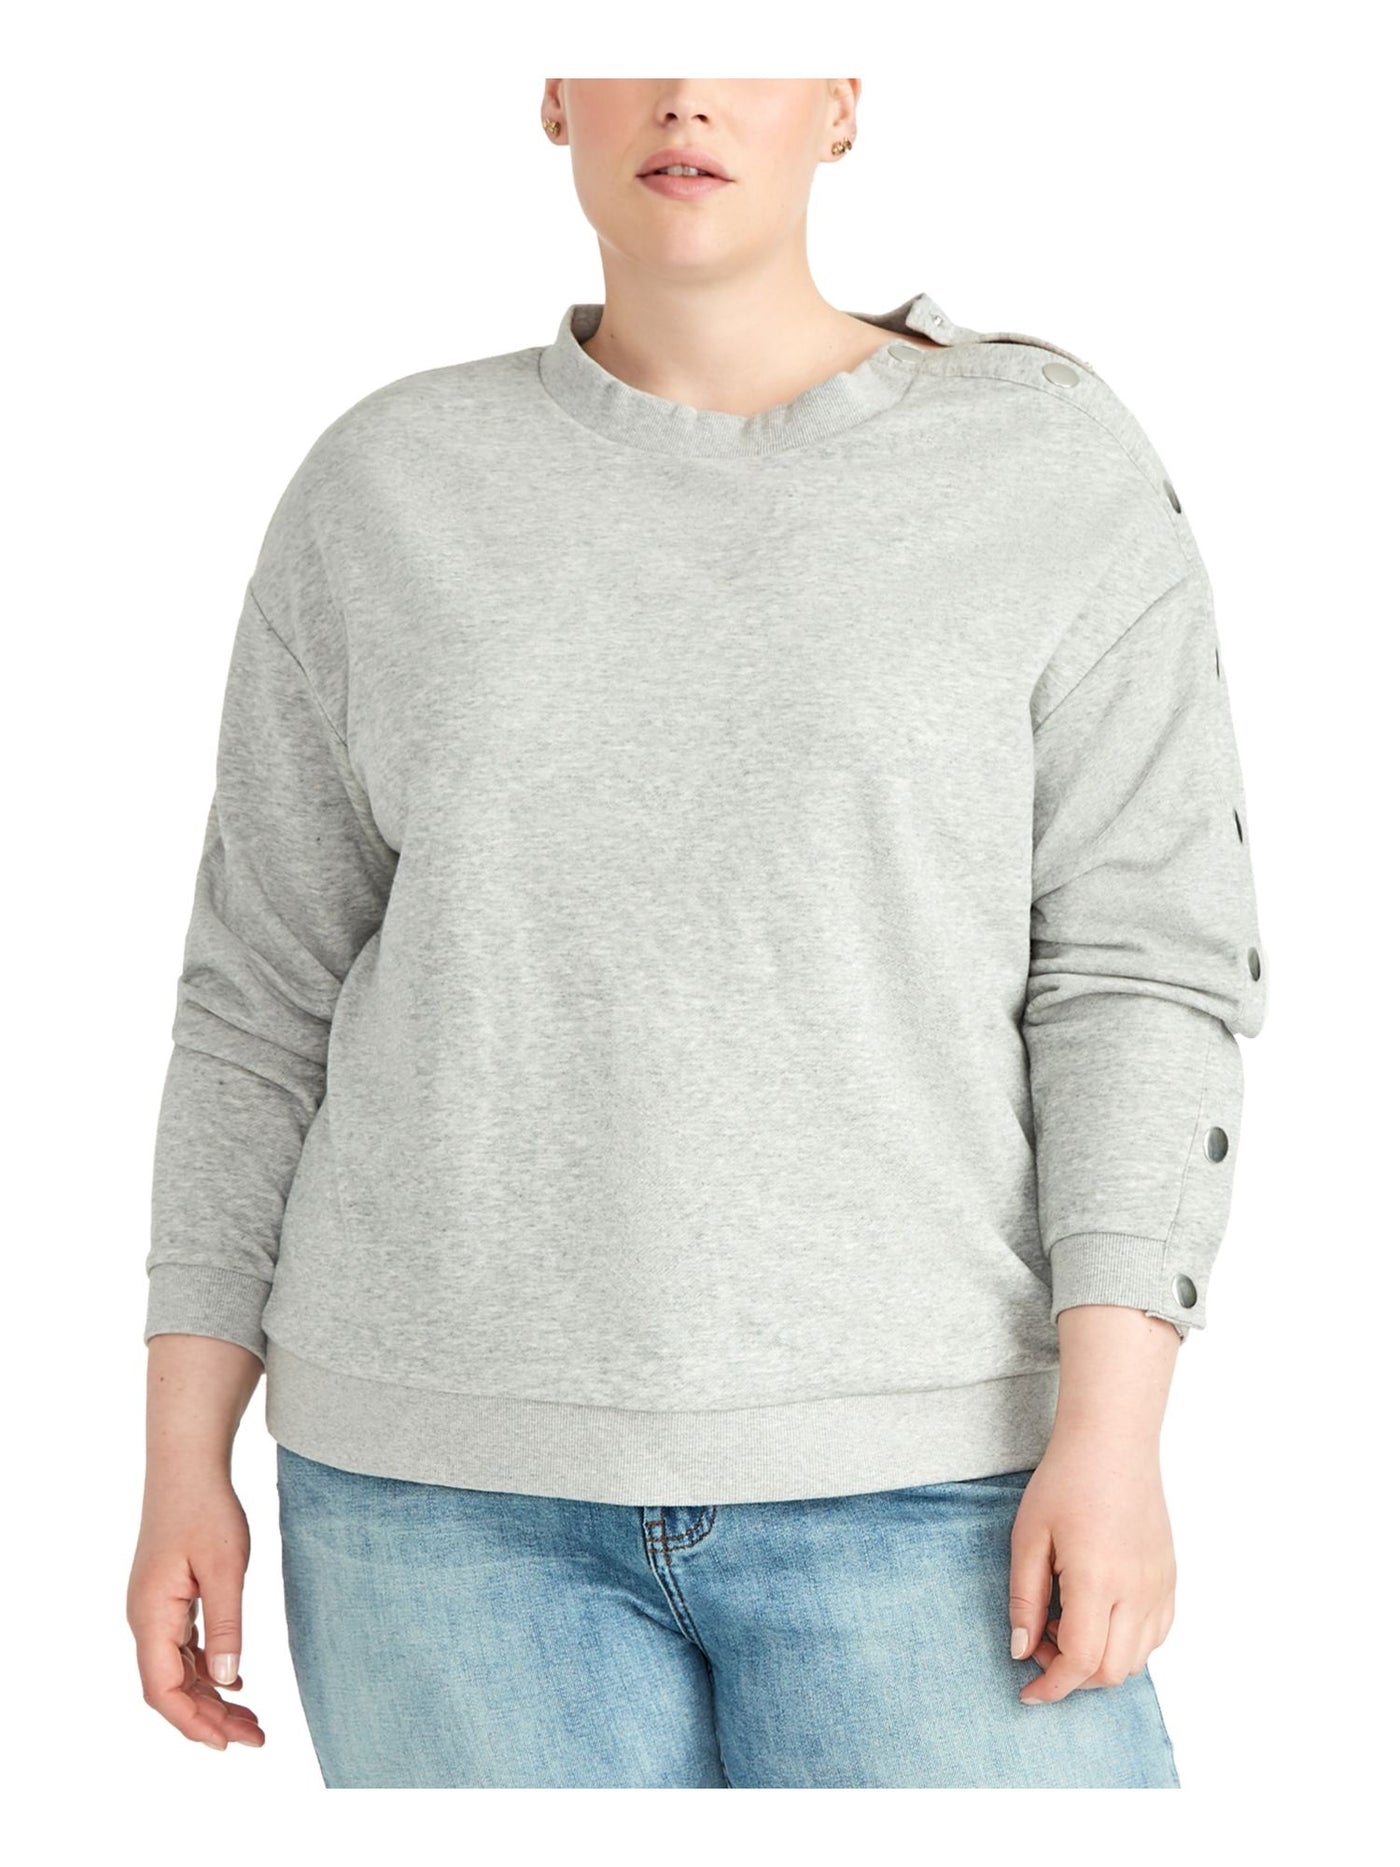 RACHEL ROY Womens Gray Snap Sleeve Long Sleeve Crew Neck T-Shirt Plus 3X